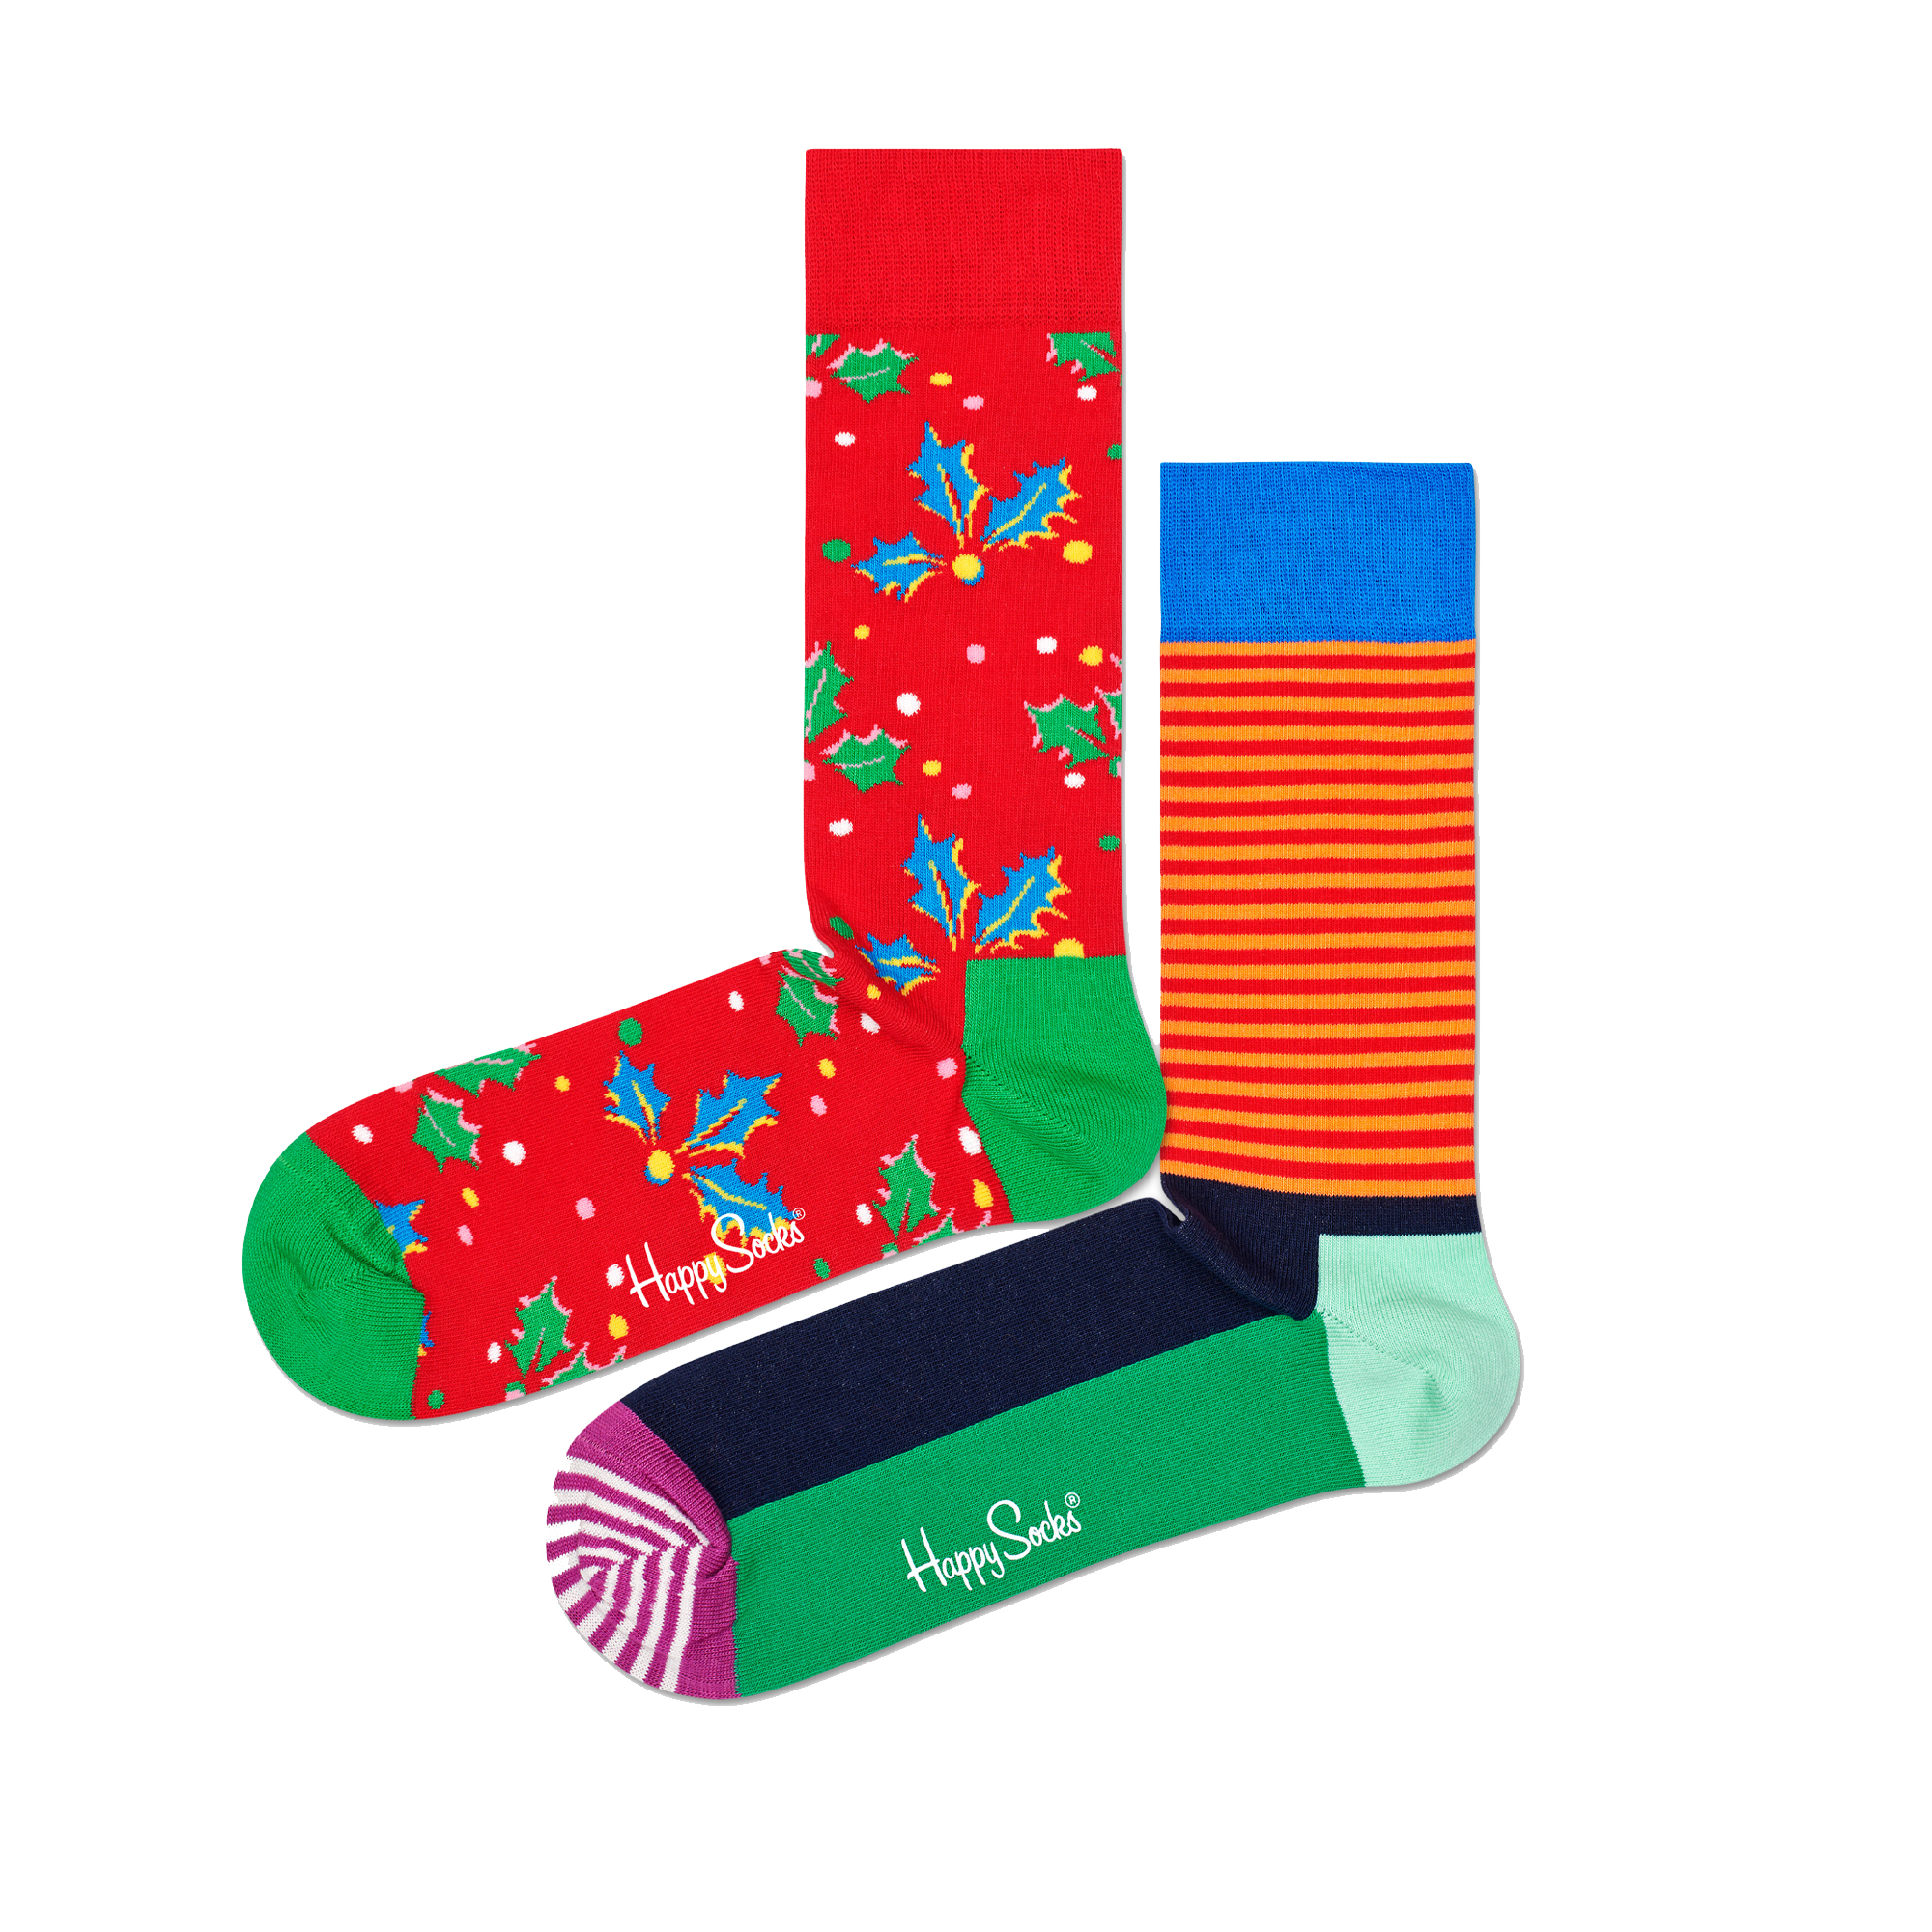 Par De Calcetines Happy Socks Christmas Cracker Holly Gift Box - multicolor - 